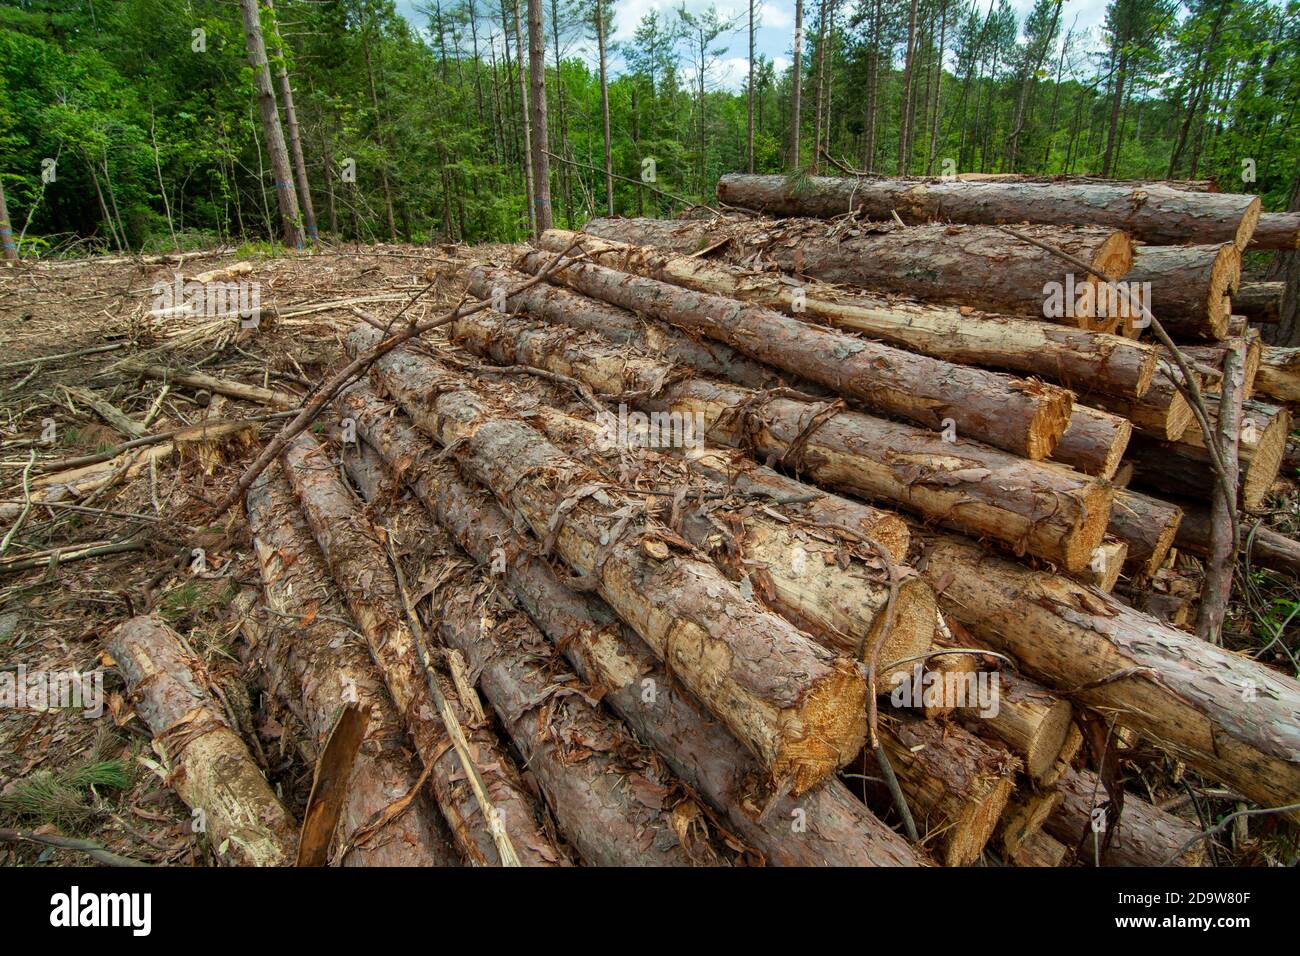 A logging operation in Phillipston Massachusetts Stock Photo